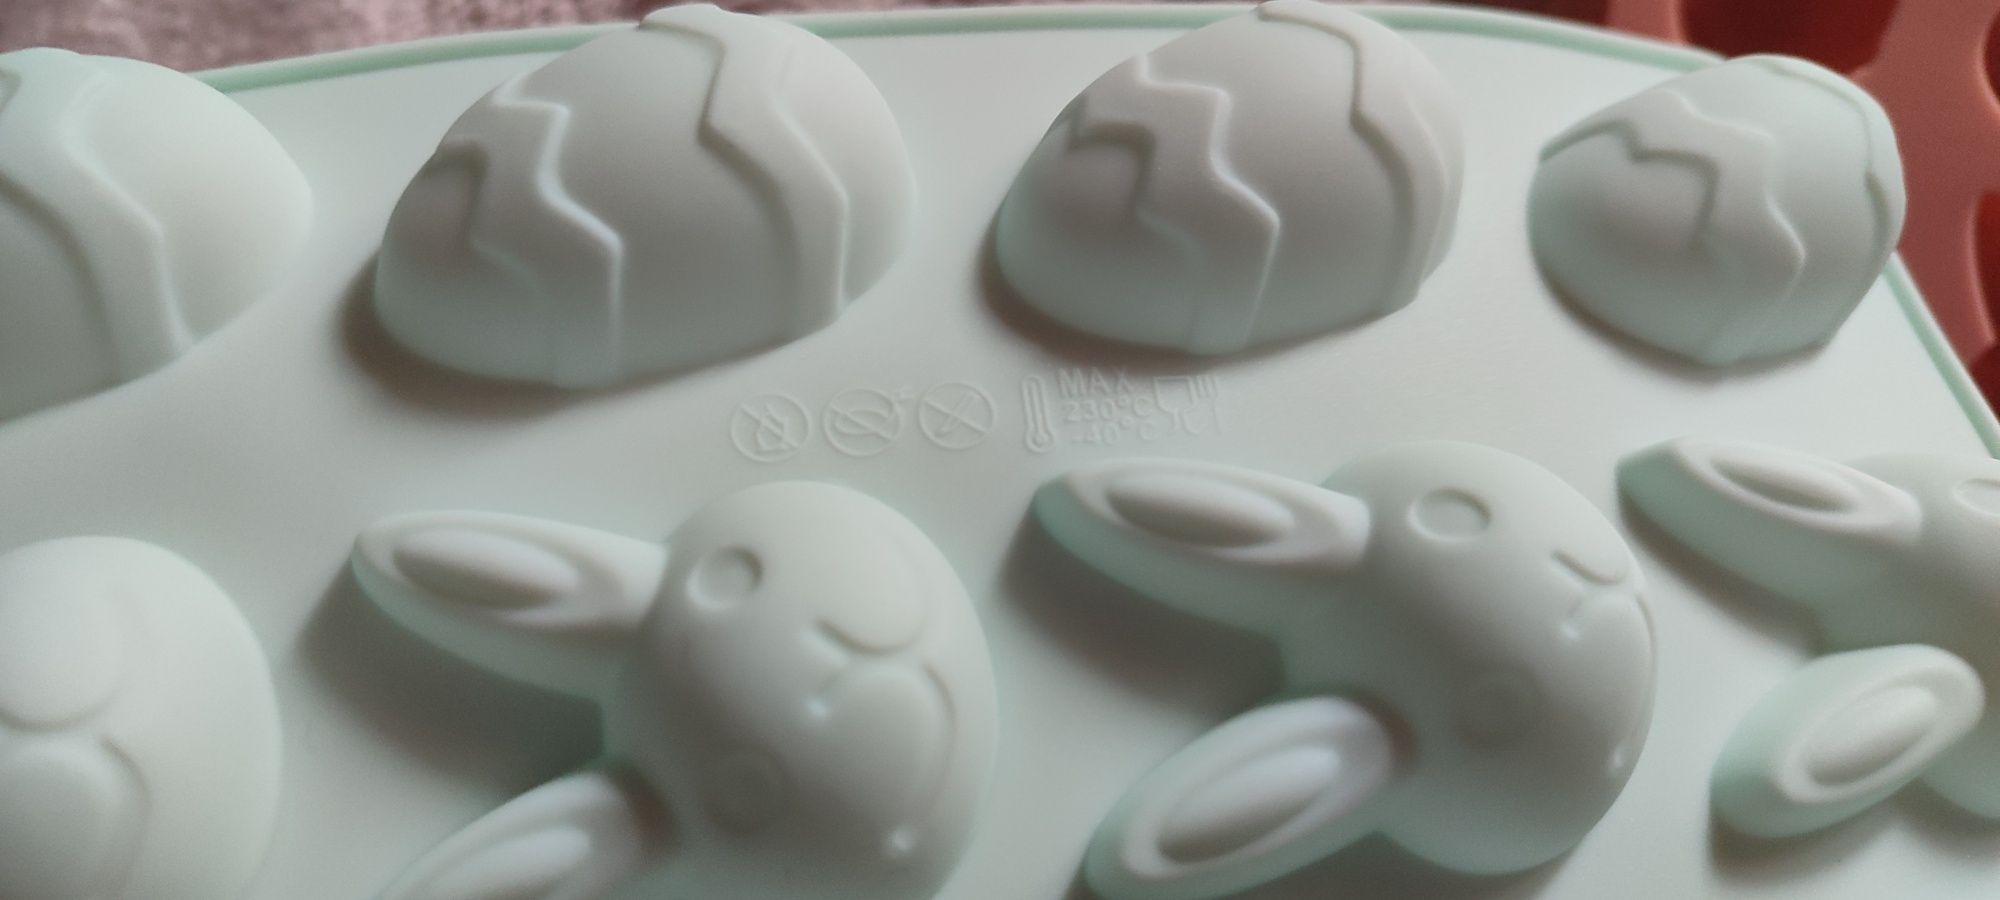 Силіконовий пасхальний молд яйця, кролики,силиконовая пасхальная форм